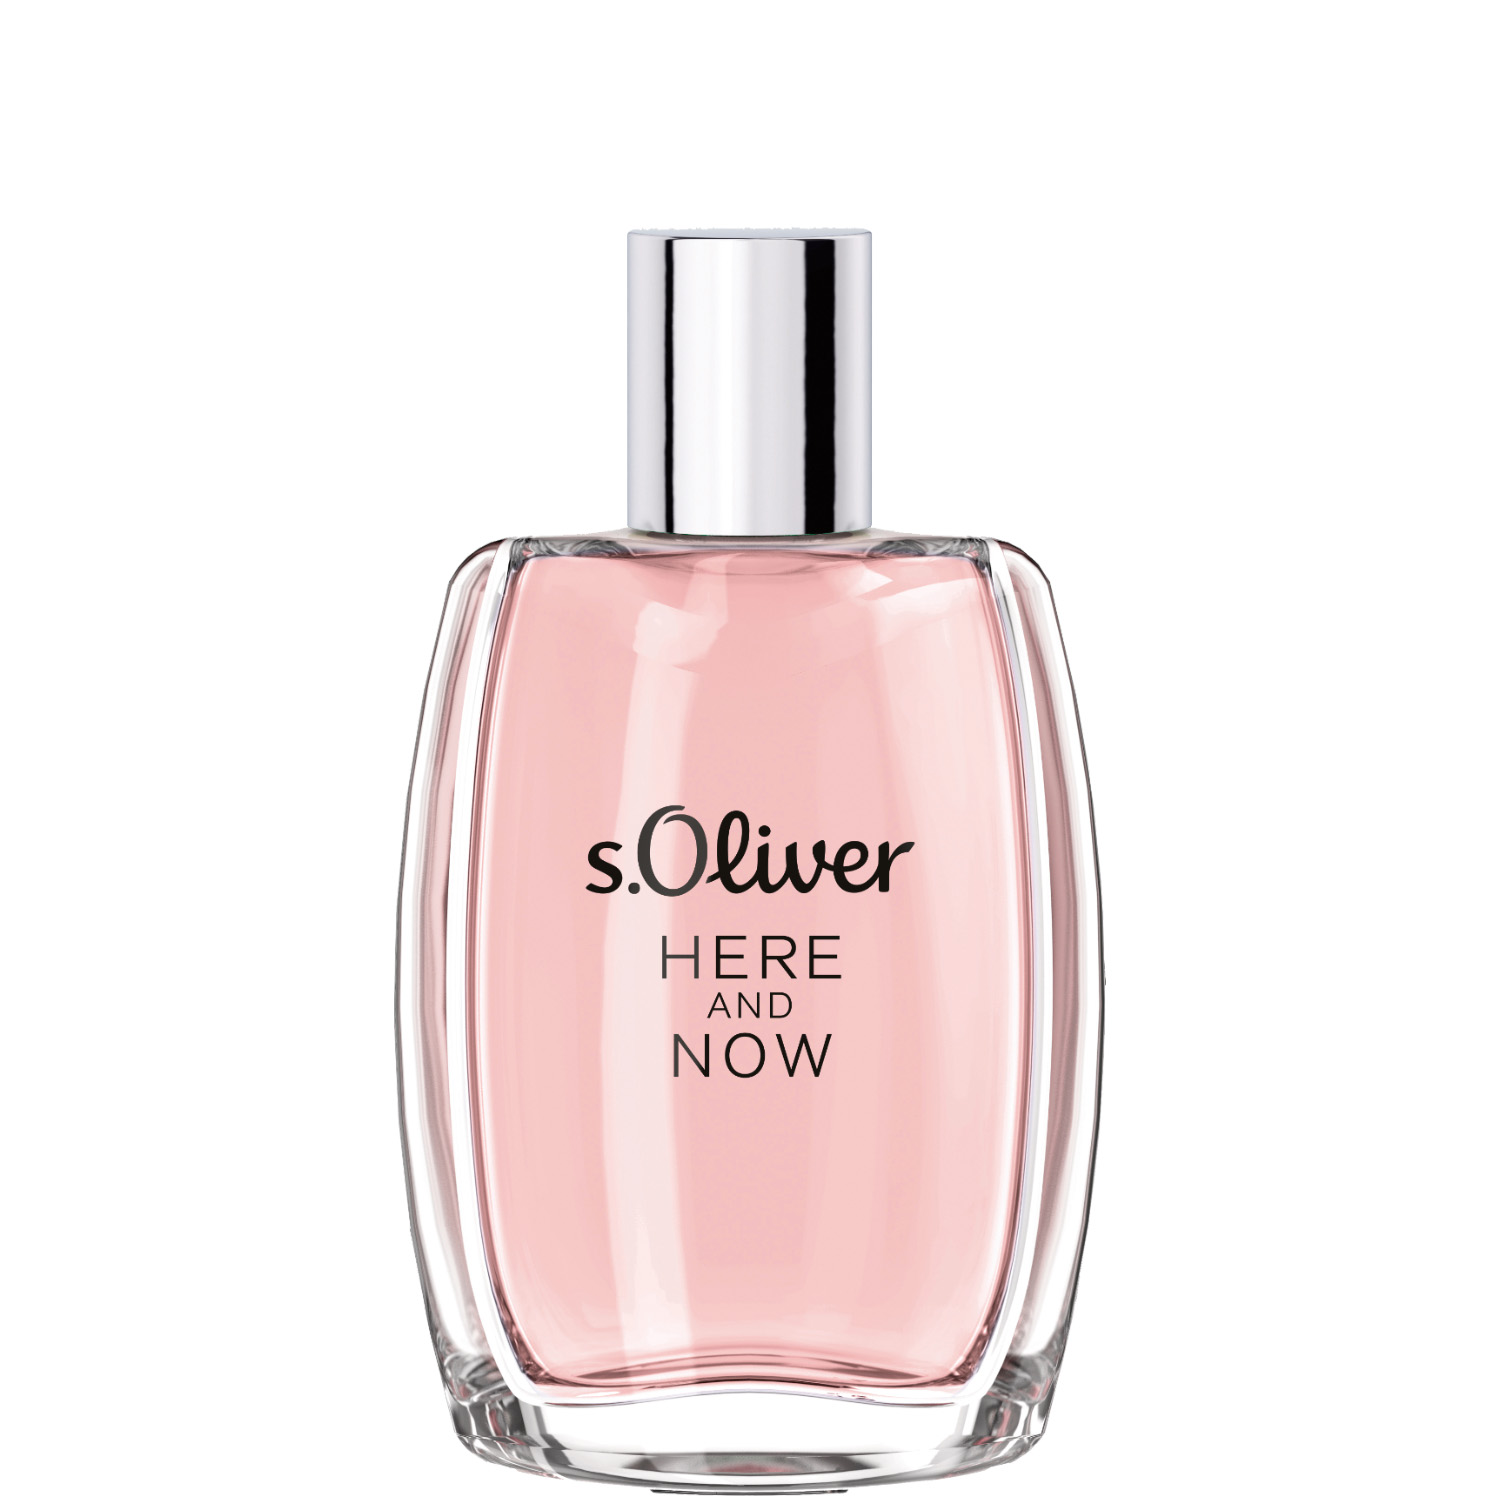 S.Oliver Here And Now Women Eau de Parfum 30ml